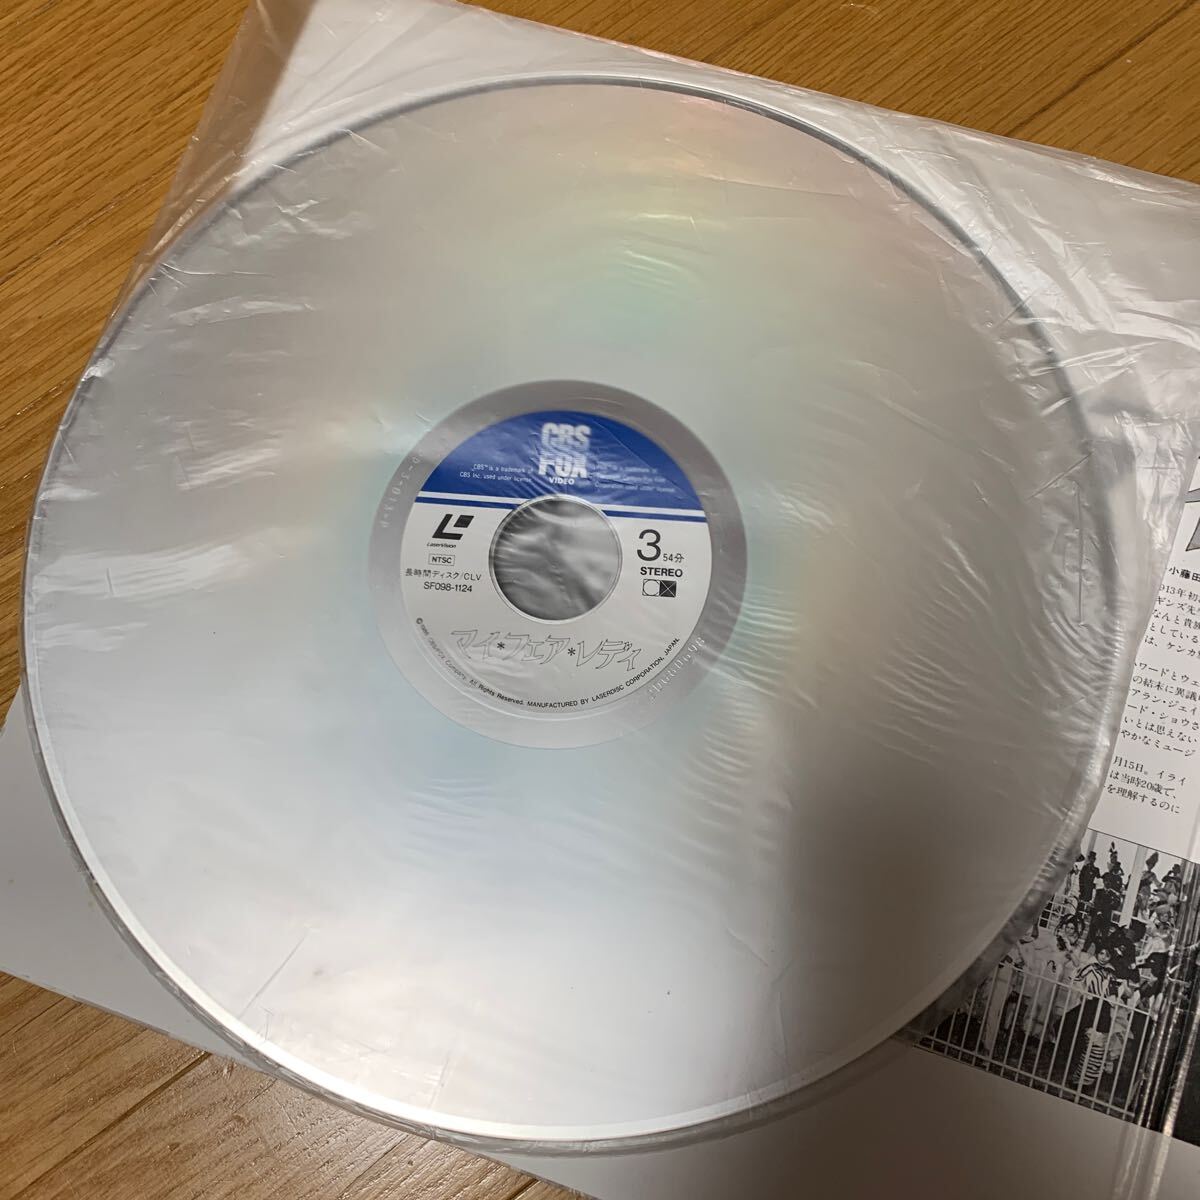  мой *fea*reti лазерный диск 2 листов комплект Одри Хепберн 1964 год красный temi-.8 группа 172 минут Rex Harrison 